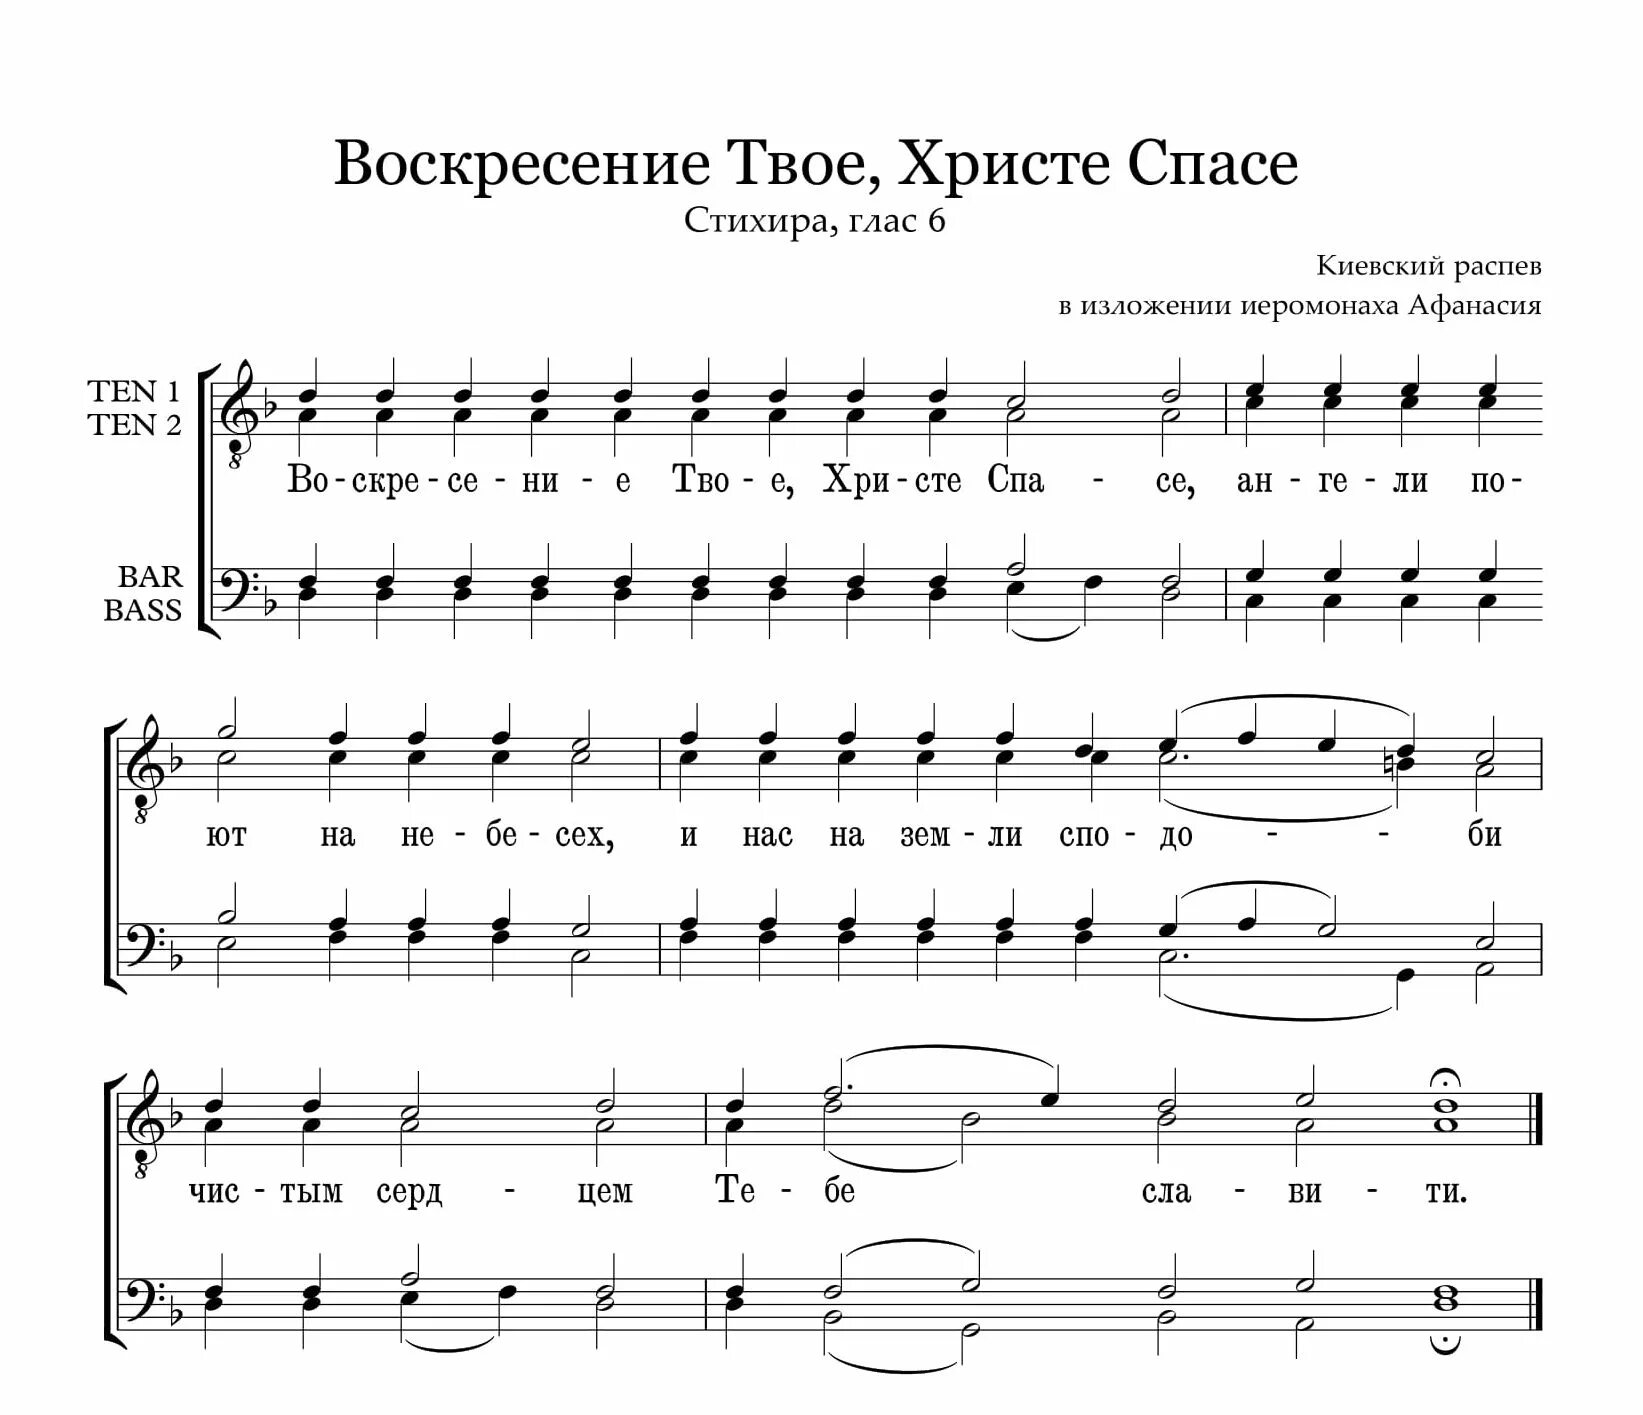 Пасхальные песни православные